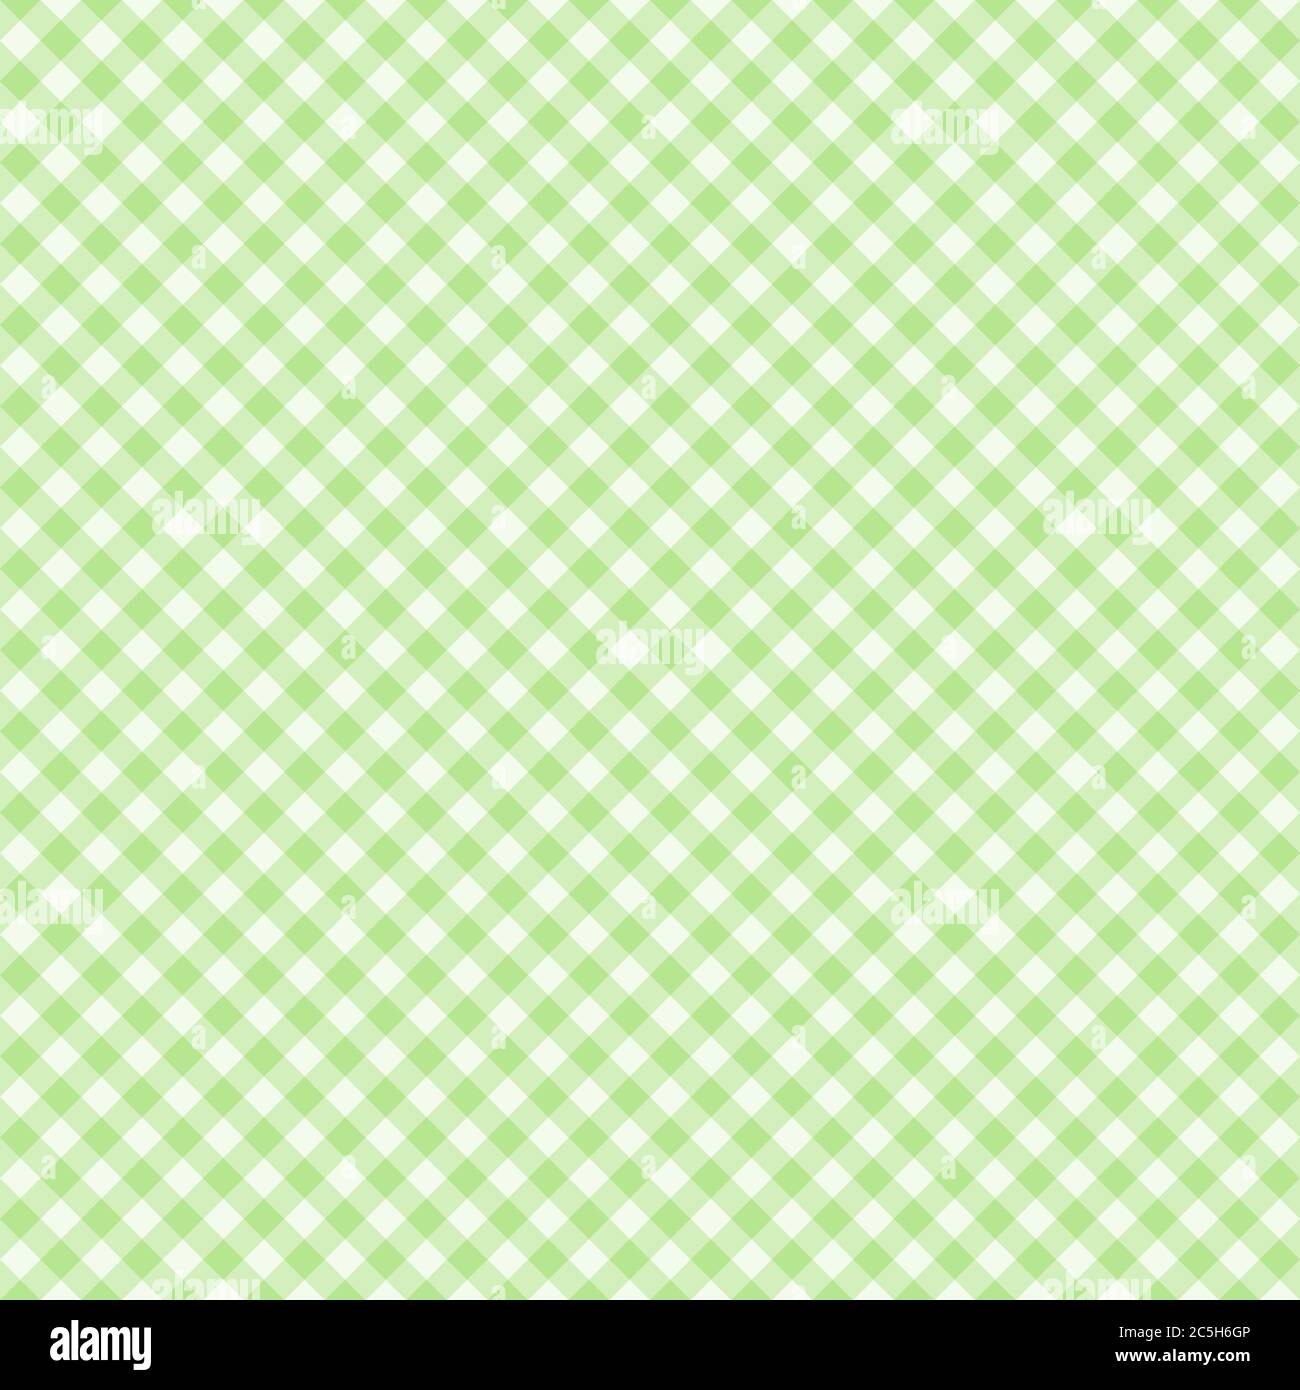 Tradizionale motivo Gingham in colore verde chiaro. Modello vettoriale a scacchi senza giunture. Sfondo geometrico astratto. Illustrazione Vettoriale